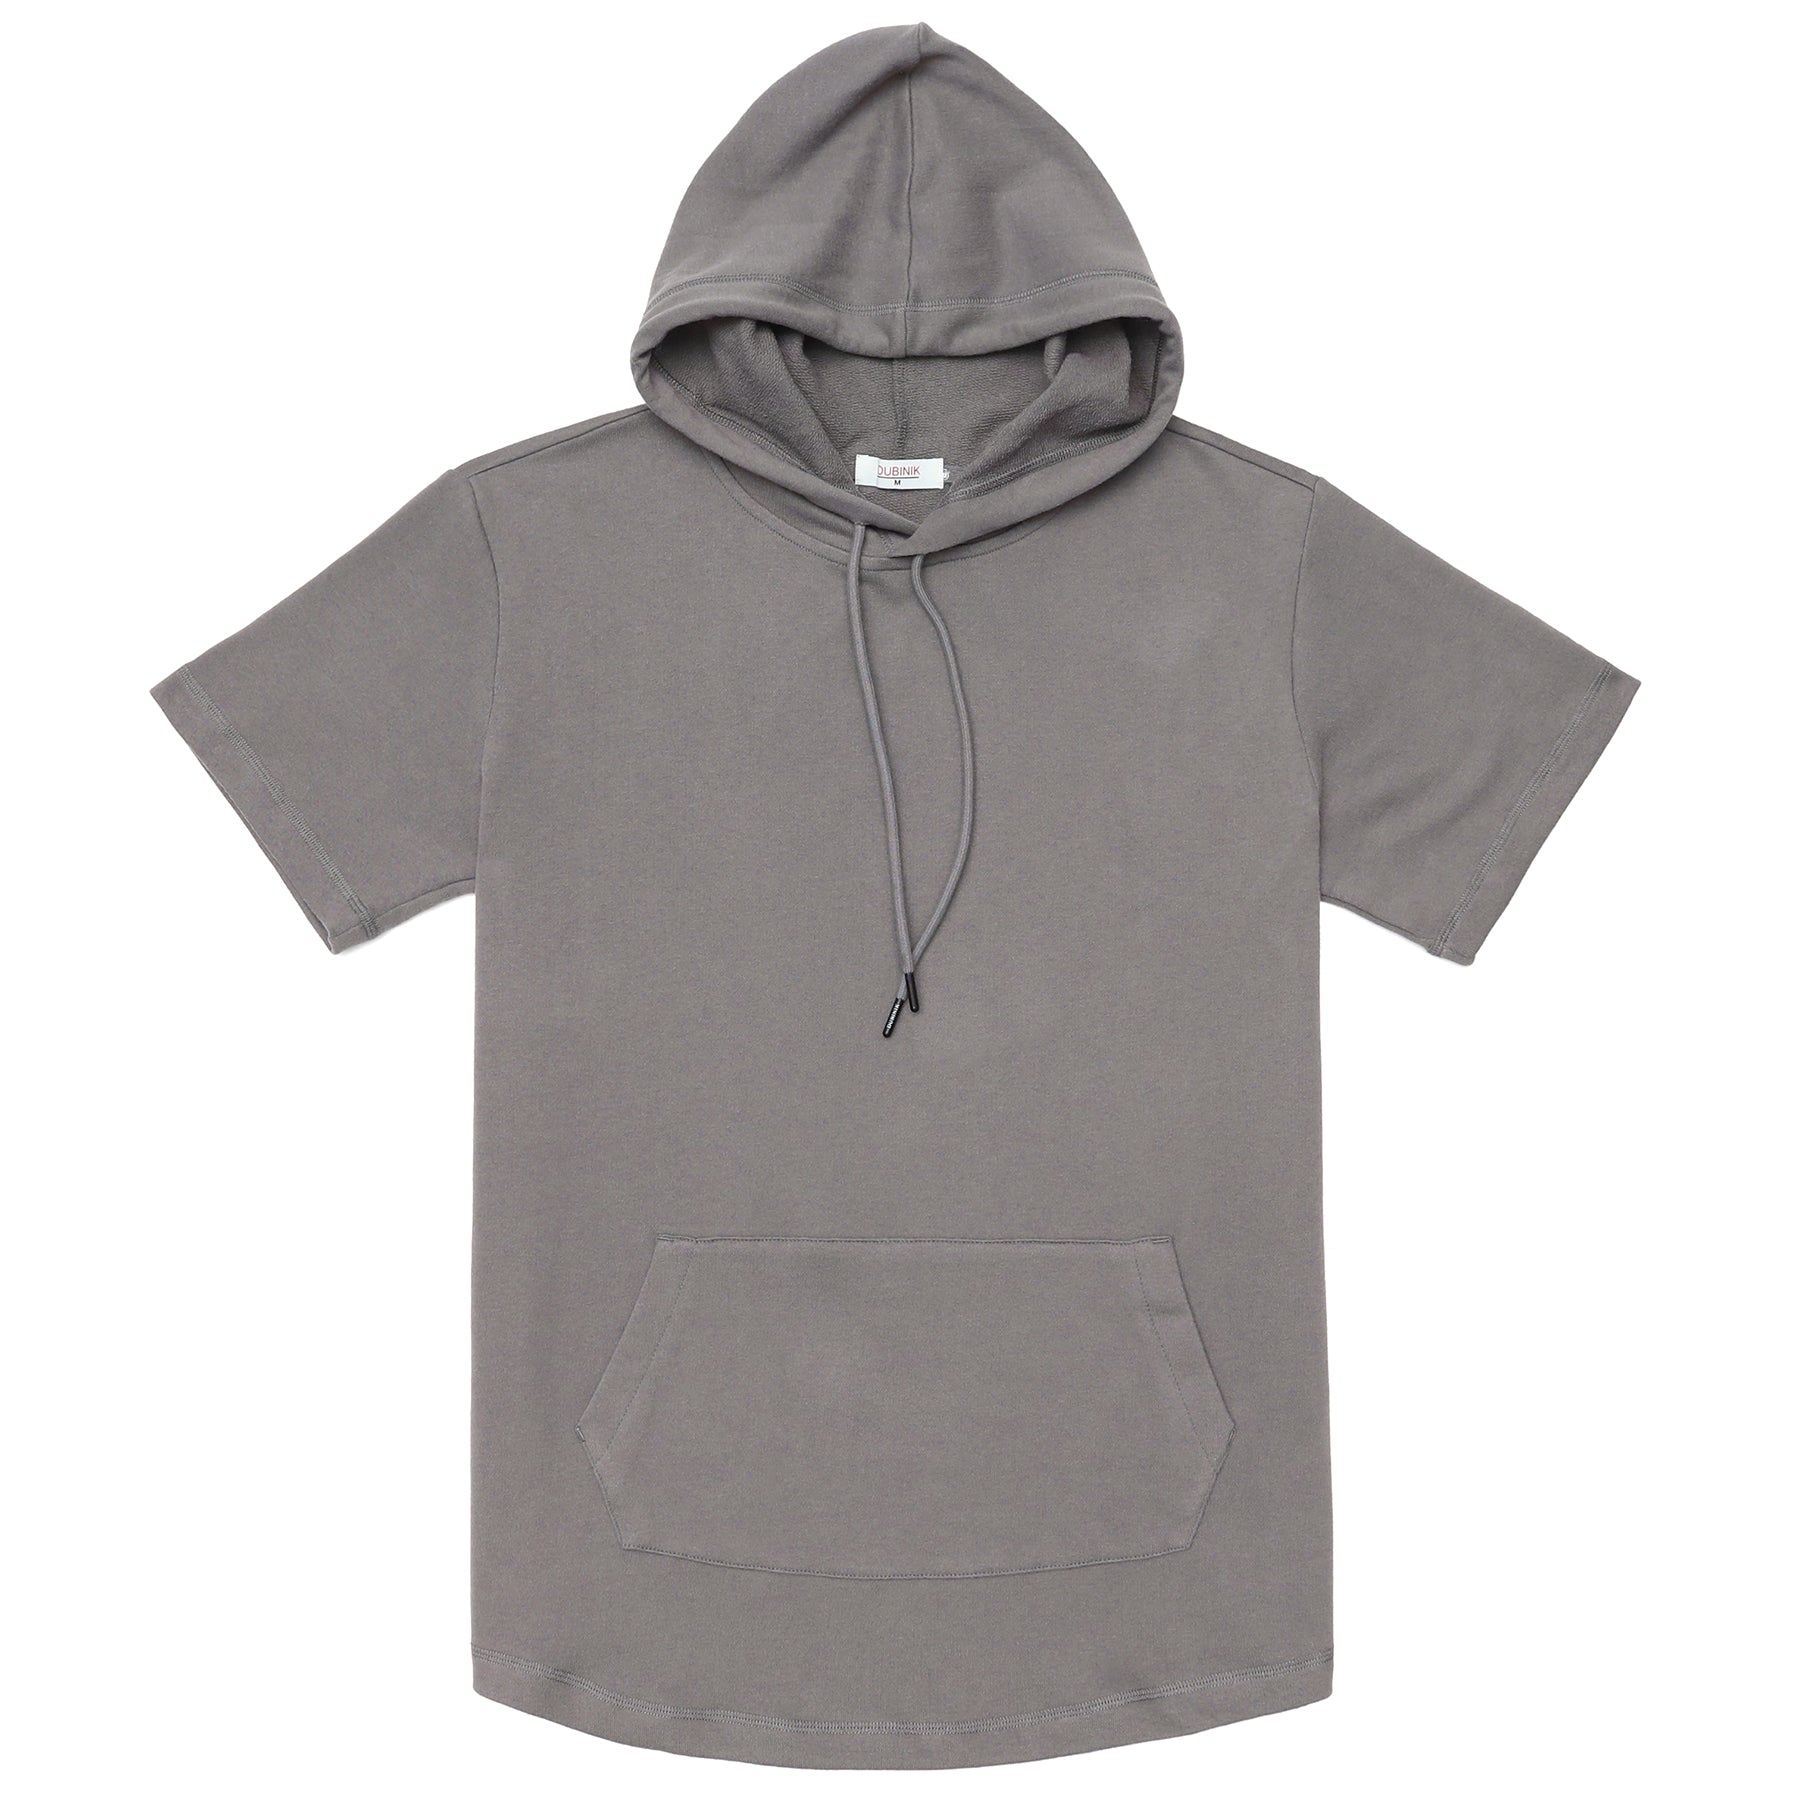 Men's Hoodies short-sleeved hooded sweatshirt #0618